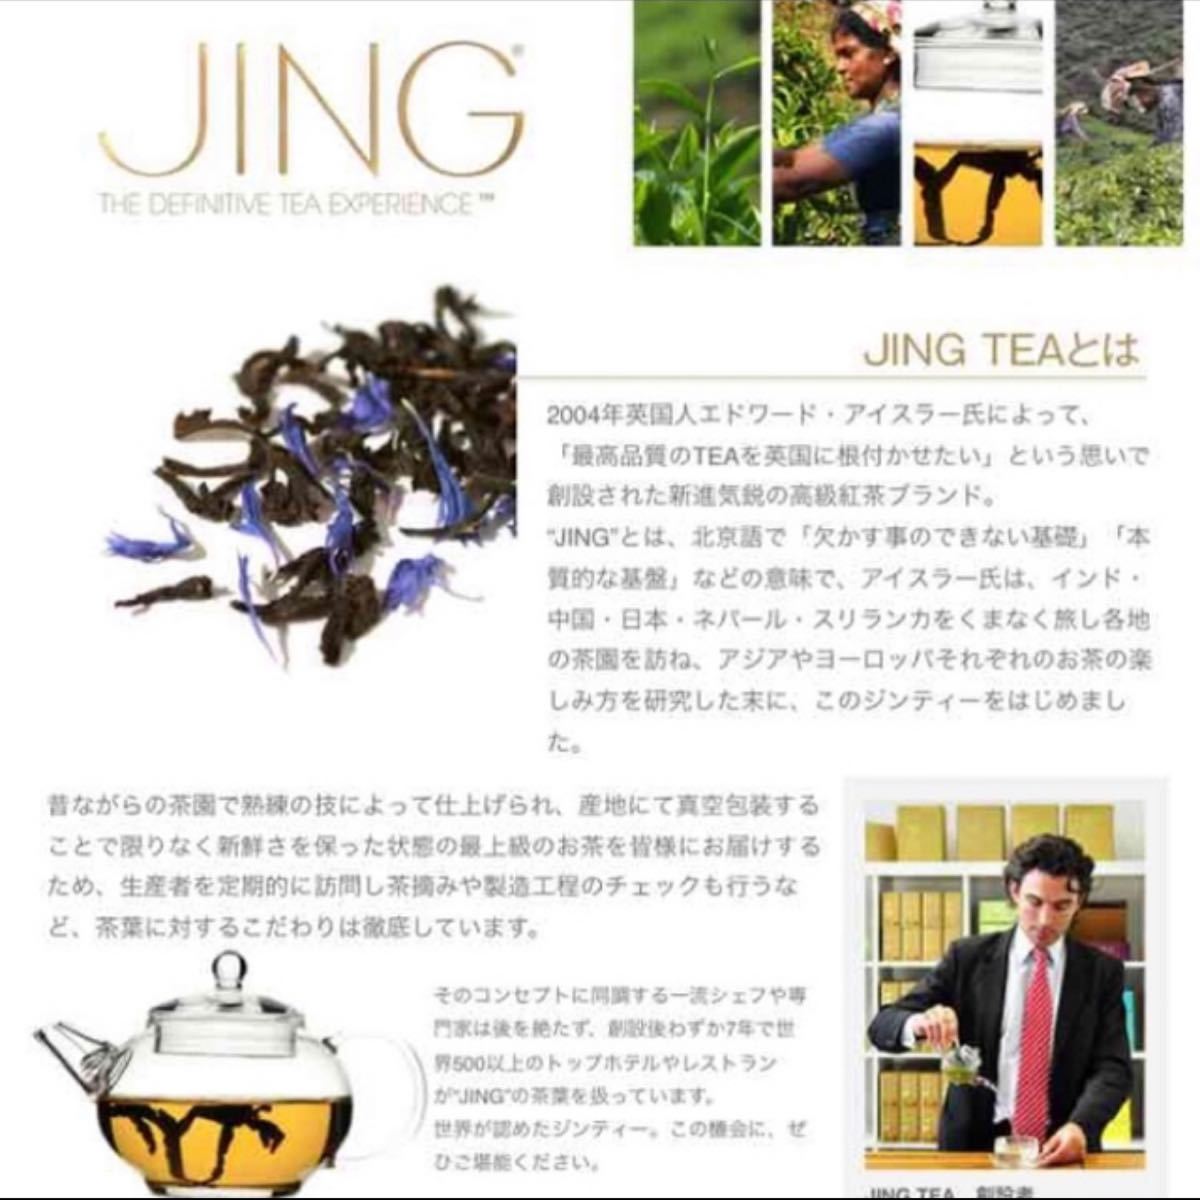 日本未入荷 イギリス高級紅茶 ジンティー。 Jing